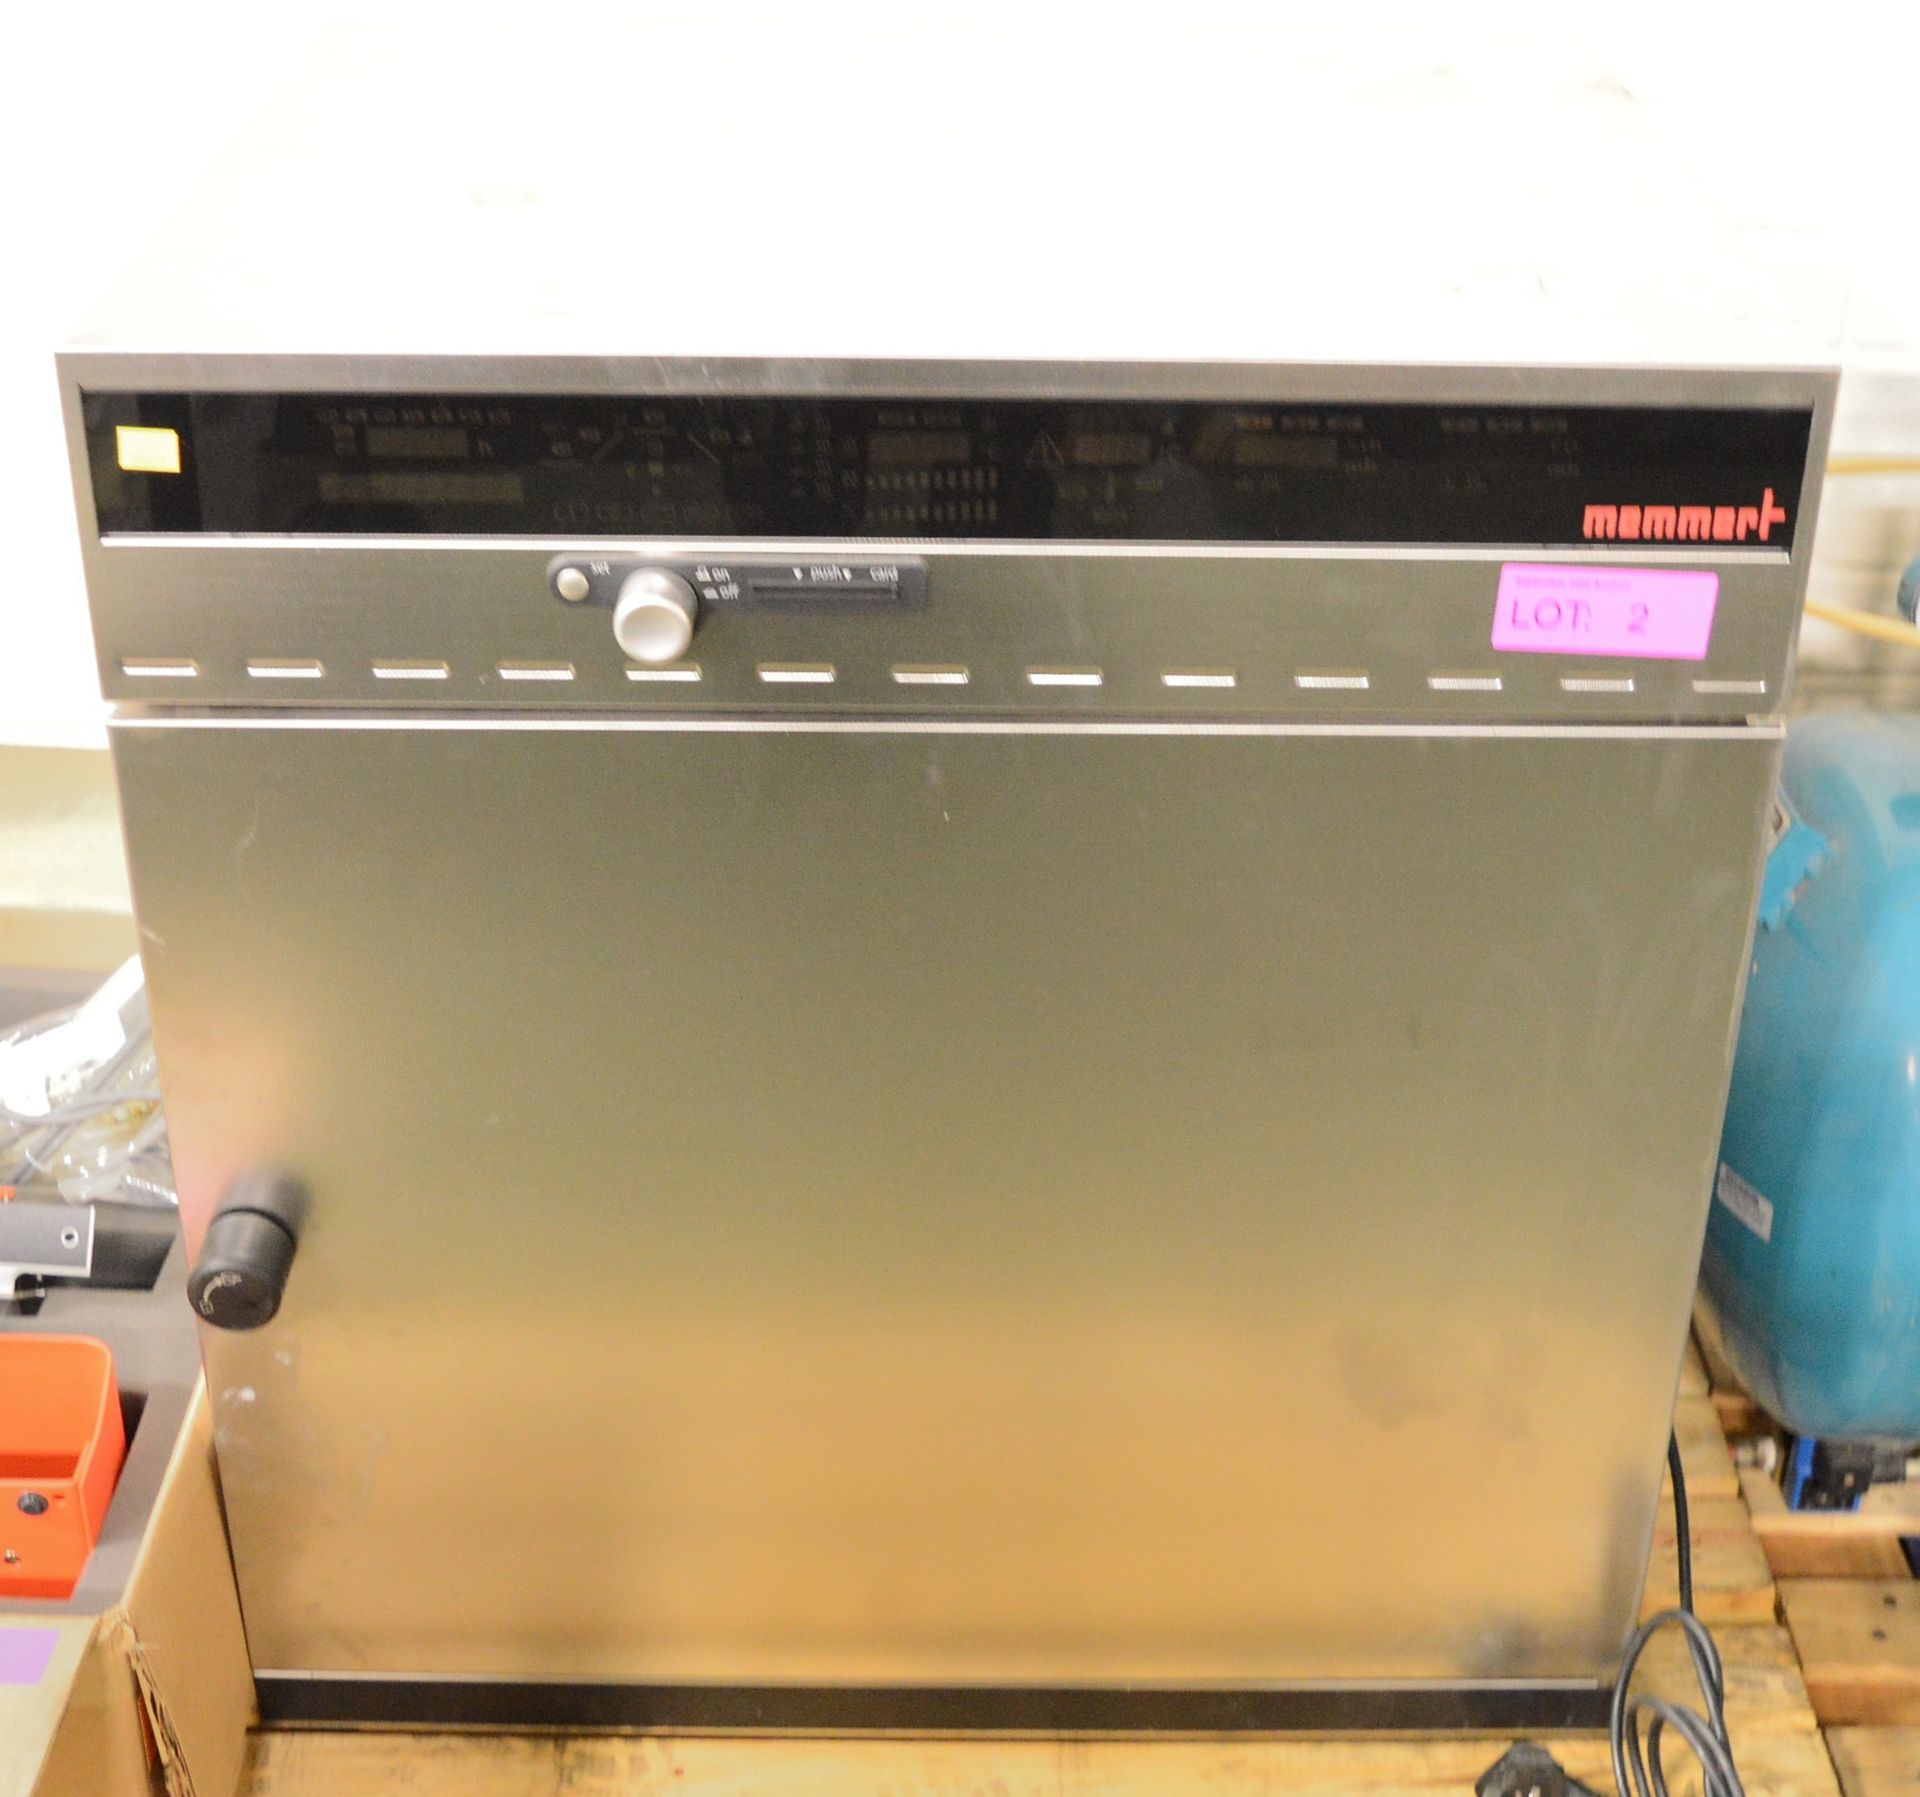 Memmert HCP108 Laboratory Oven 20-160c 230v